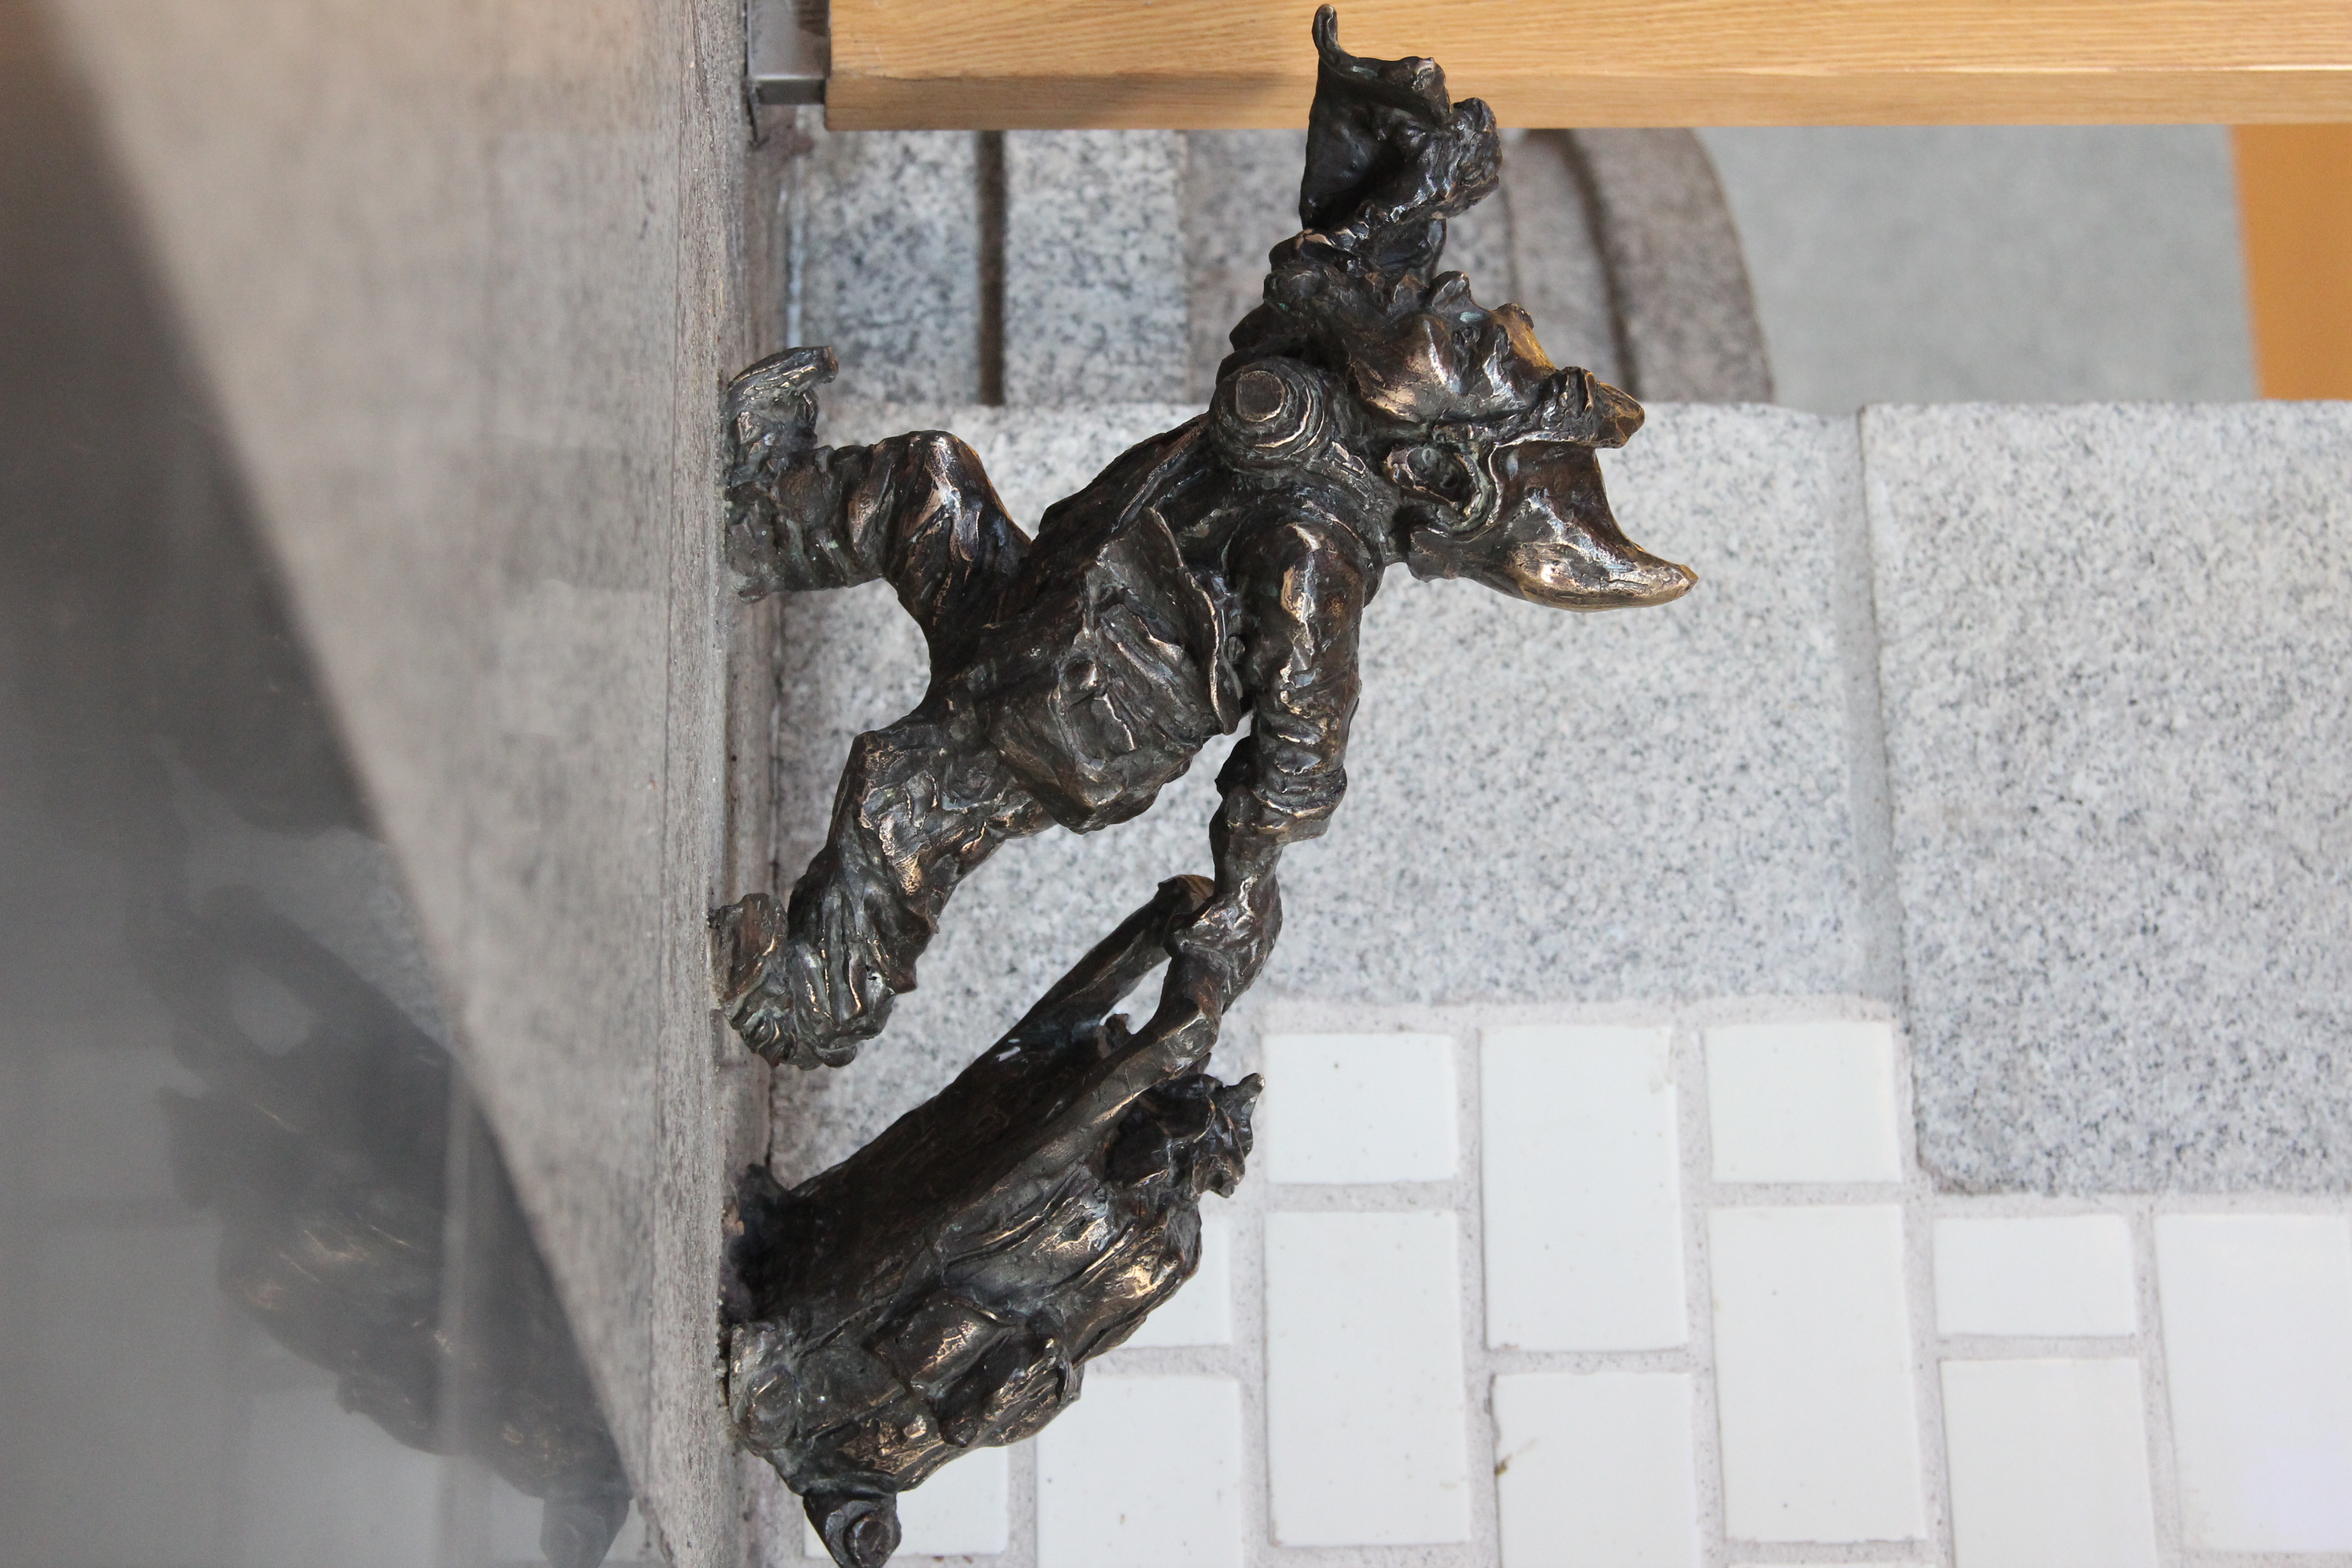 Jeden z Dworcowych Krasnali - Ciągnący walizkę z Dworca Głównego we Wrocławiu; Rzeźba: Marta Mirynowska and Piotr Makała